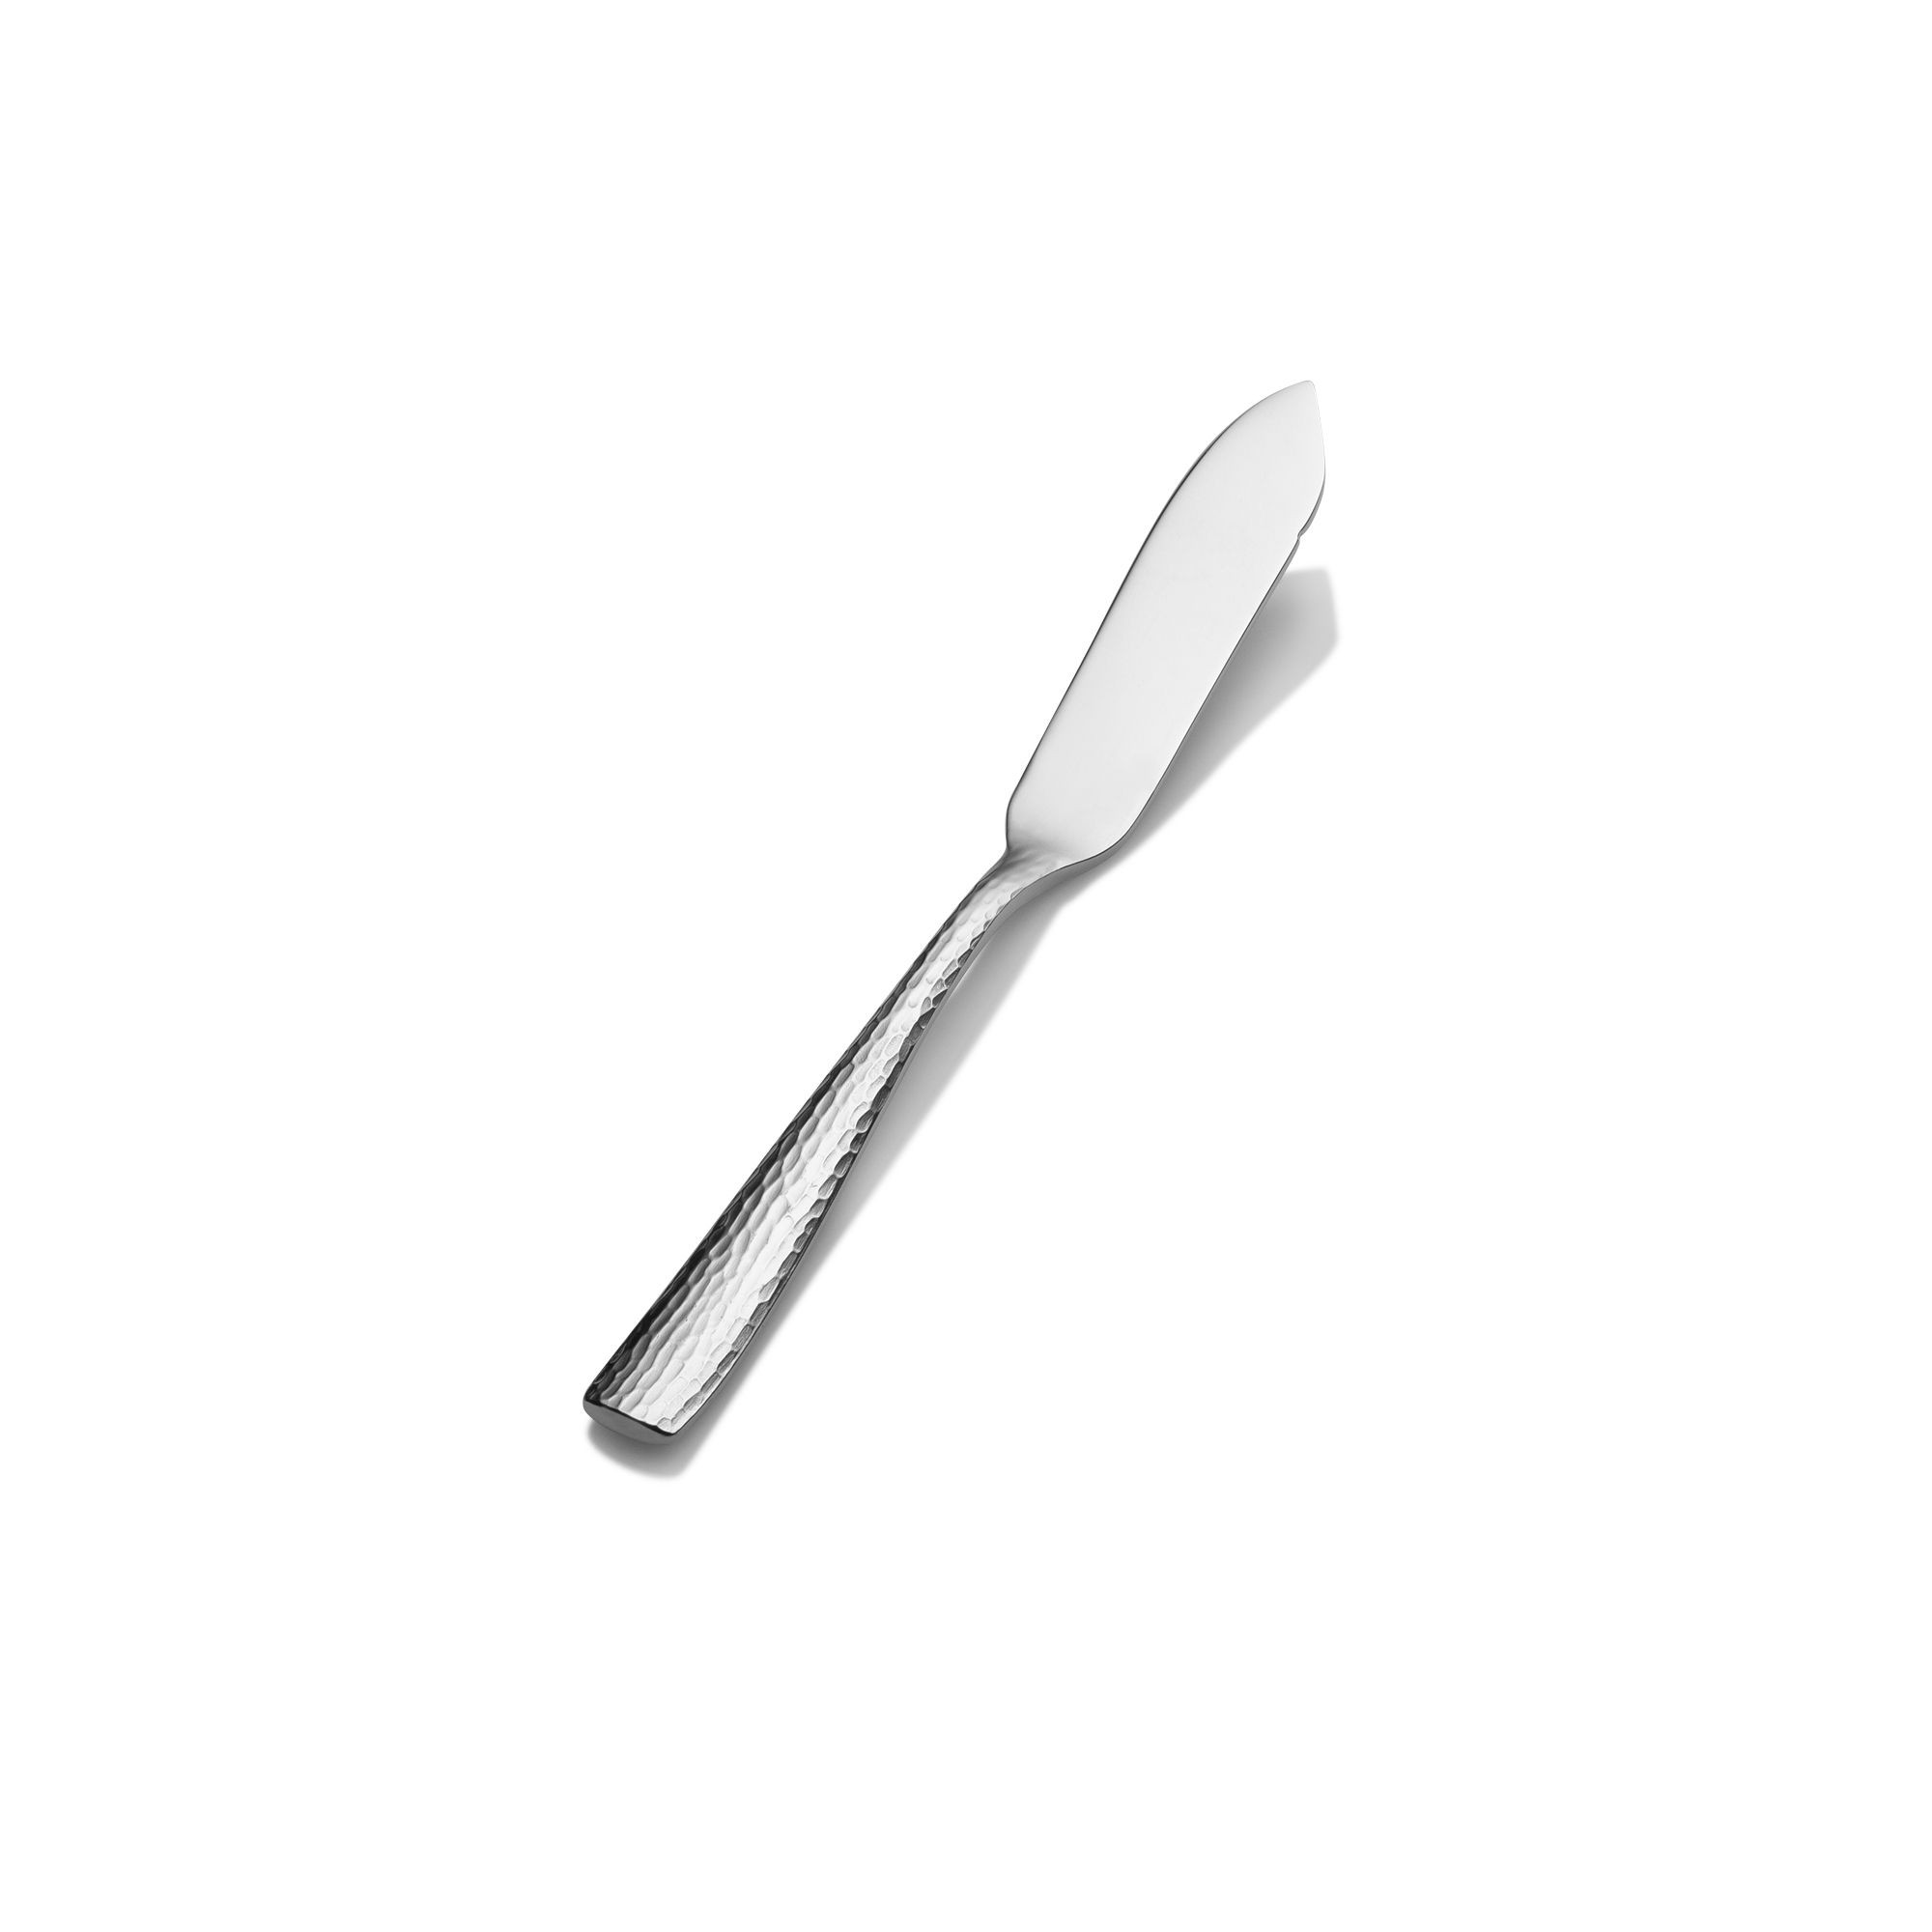 Bon Chef S3910 Scarlett 18/8 Stainless Steel Butter Knife